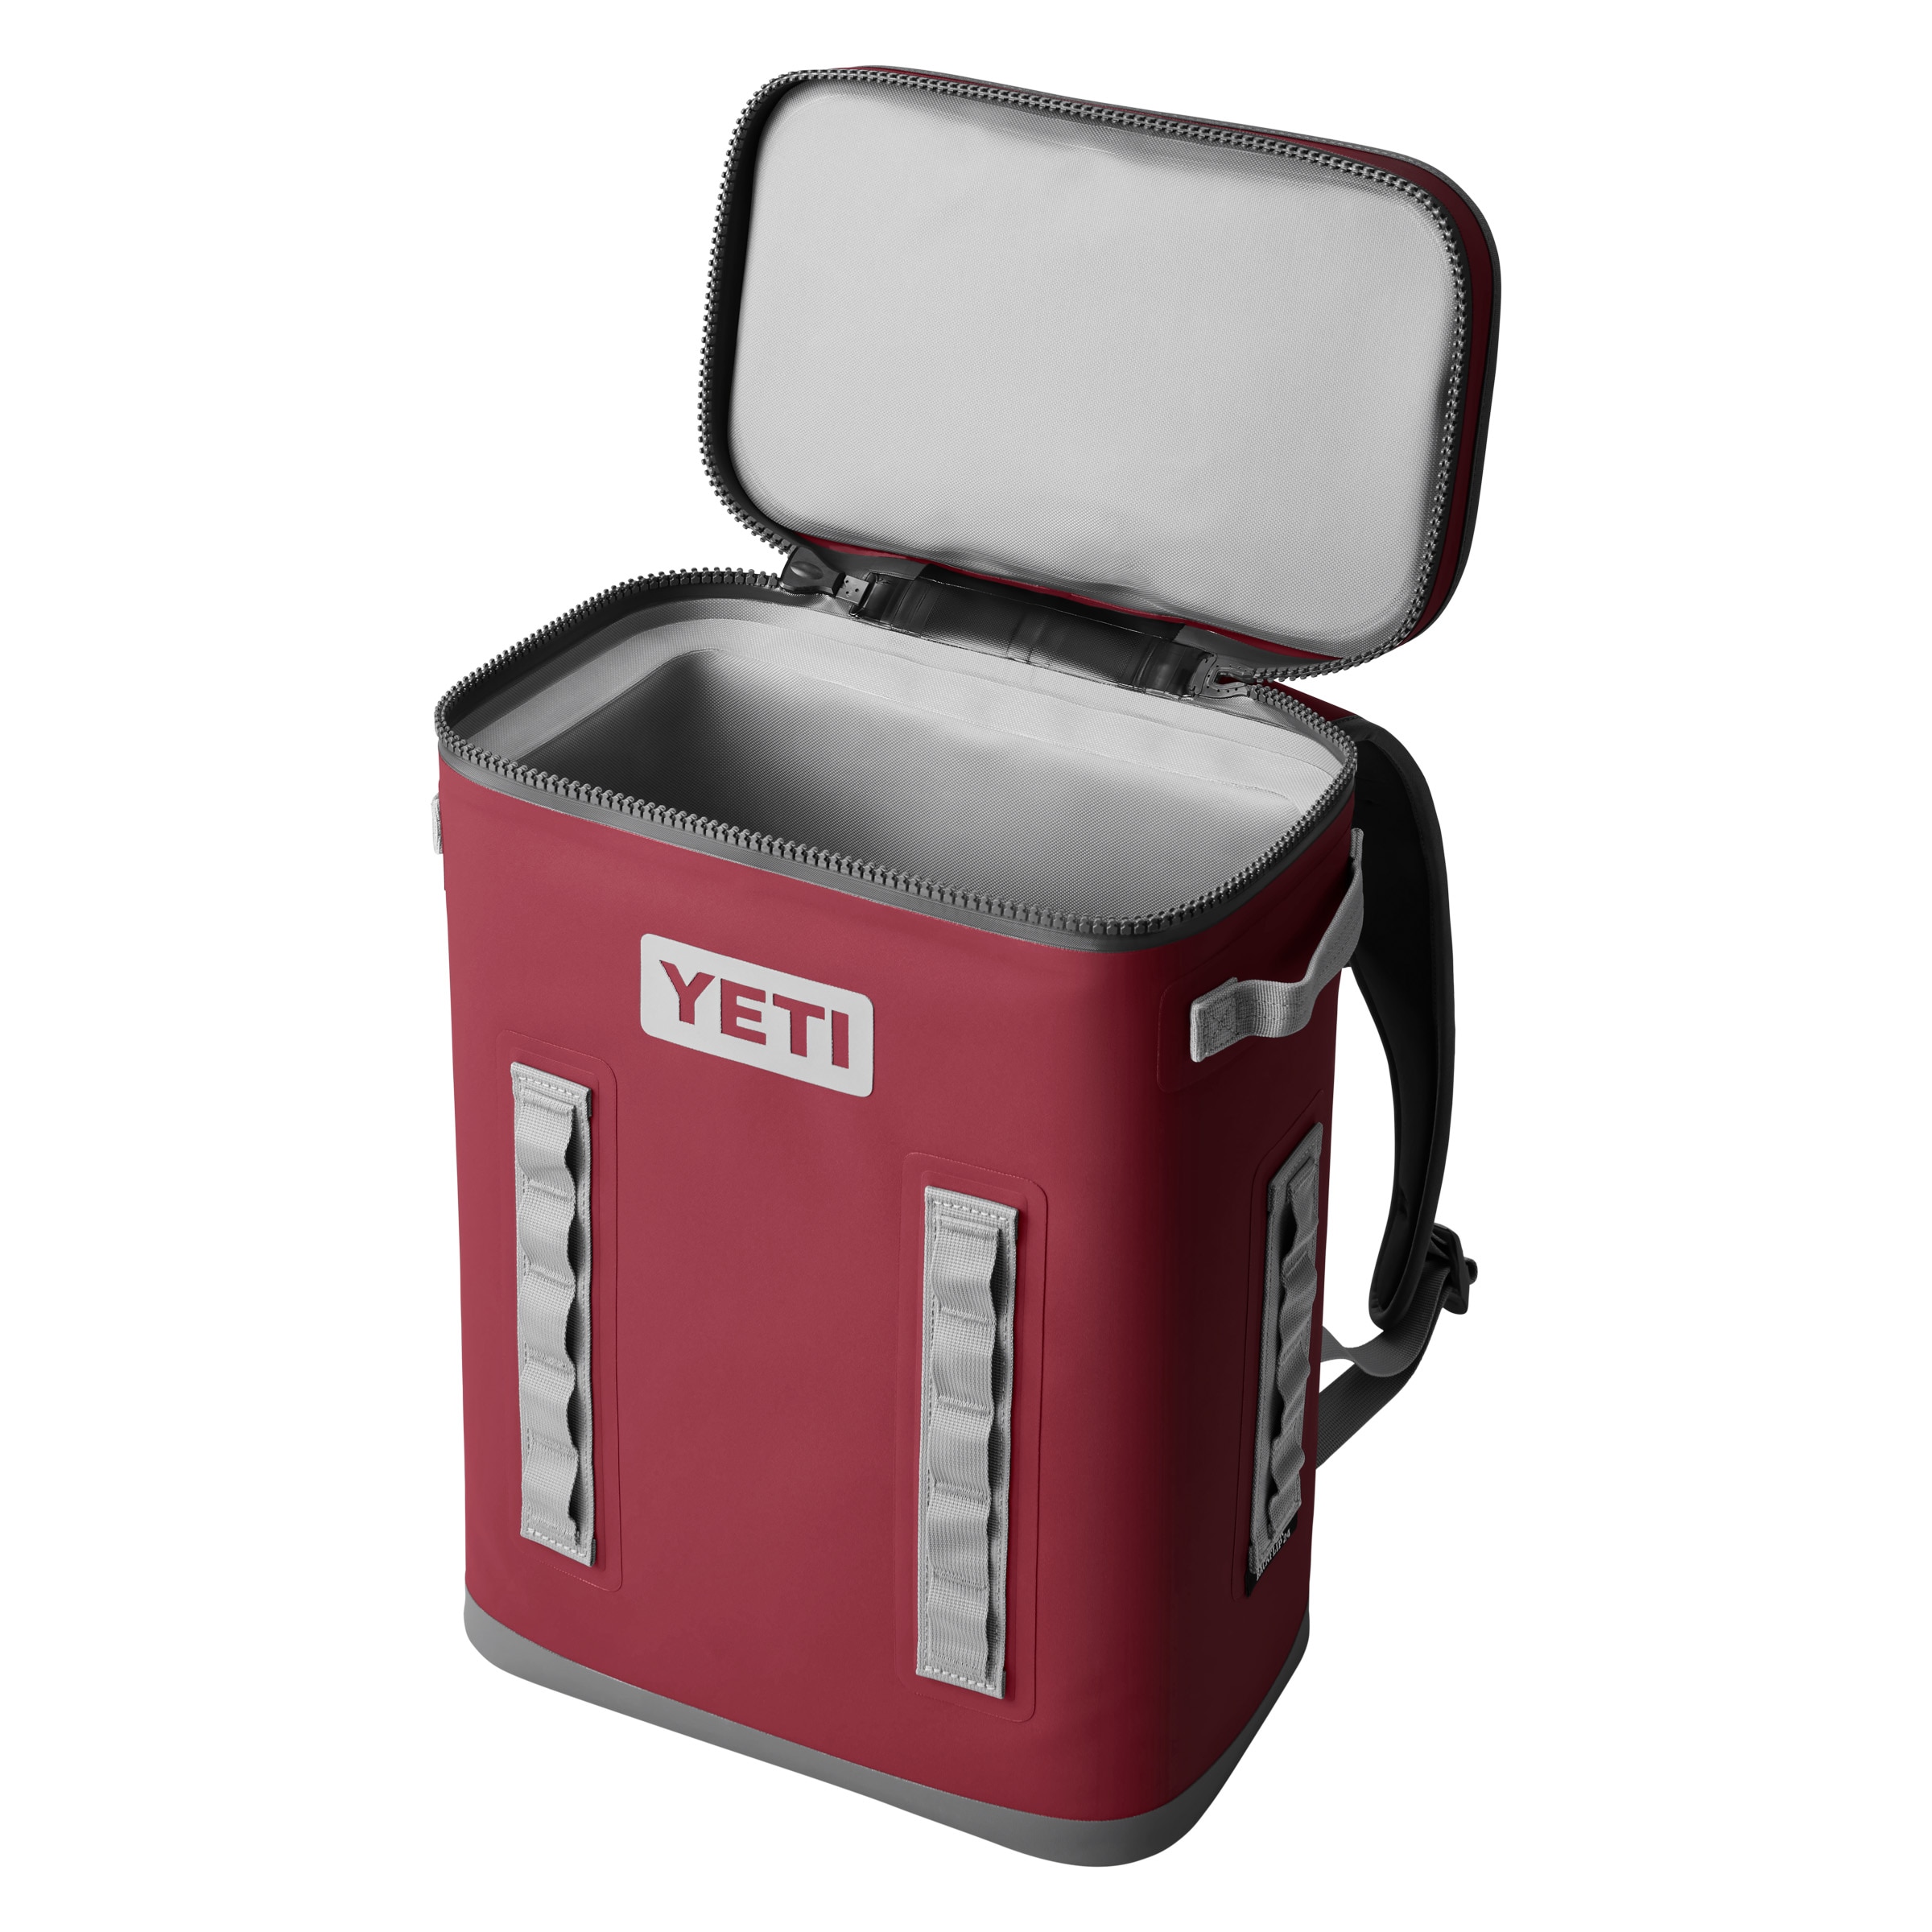 YETI Hopper Backflip 24 Soft Sided Cooler/Backpack, Harvest Red